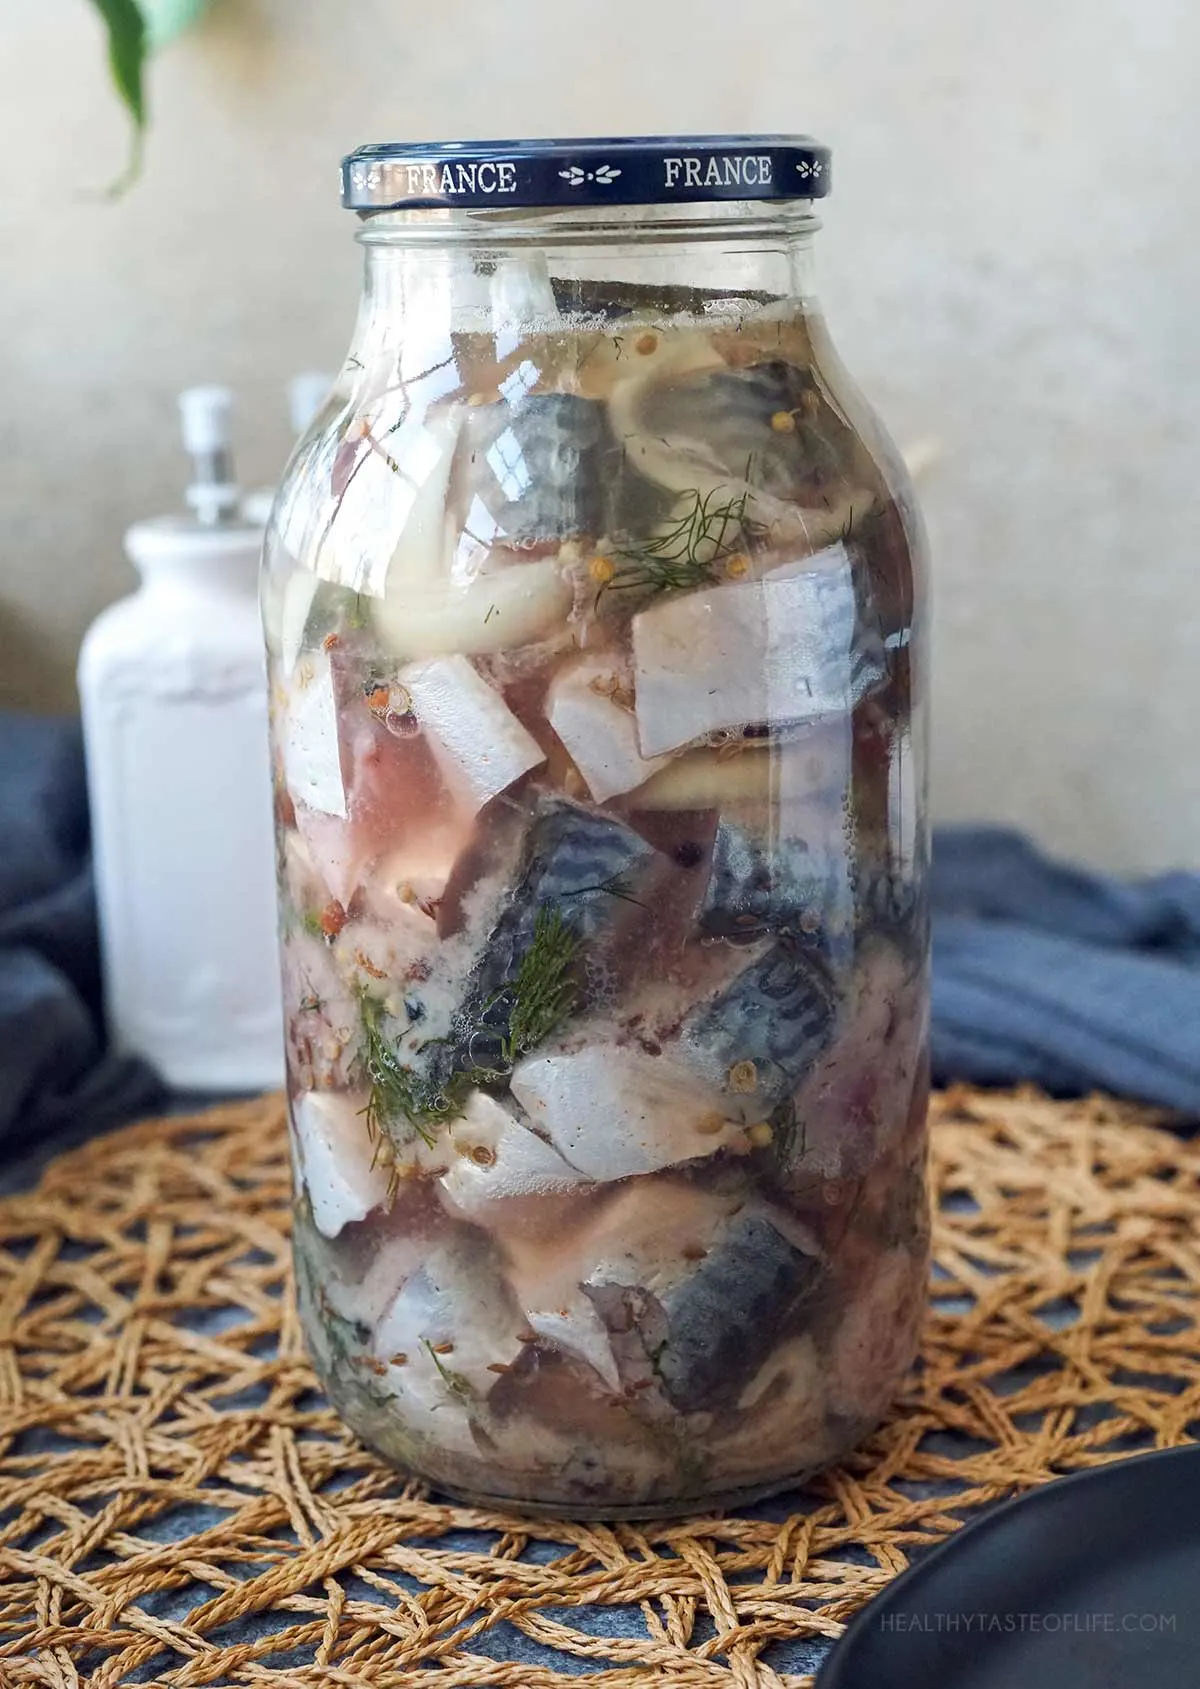 Fermented fish in a jar.